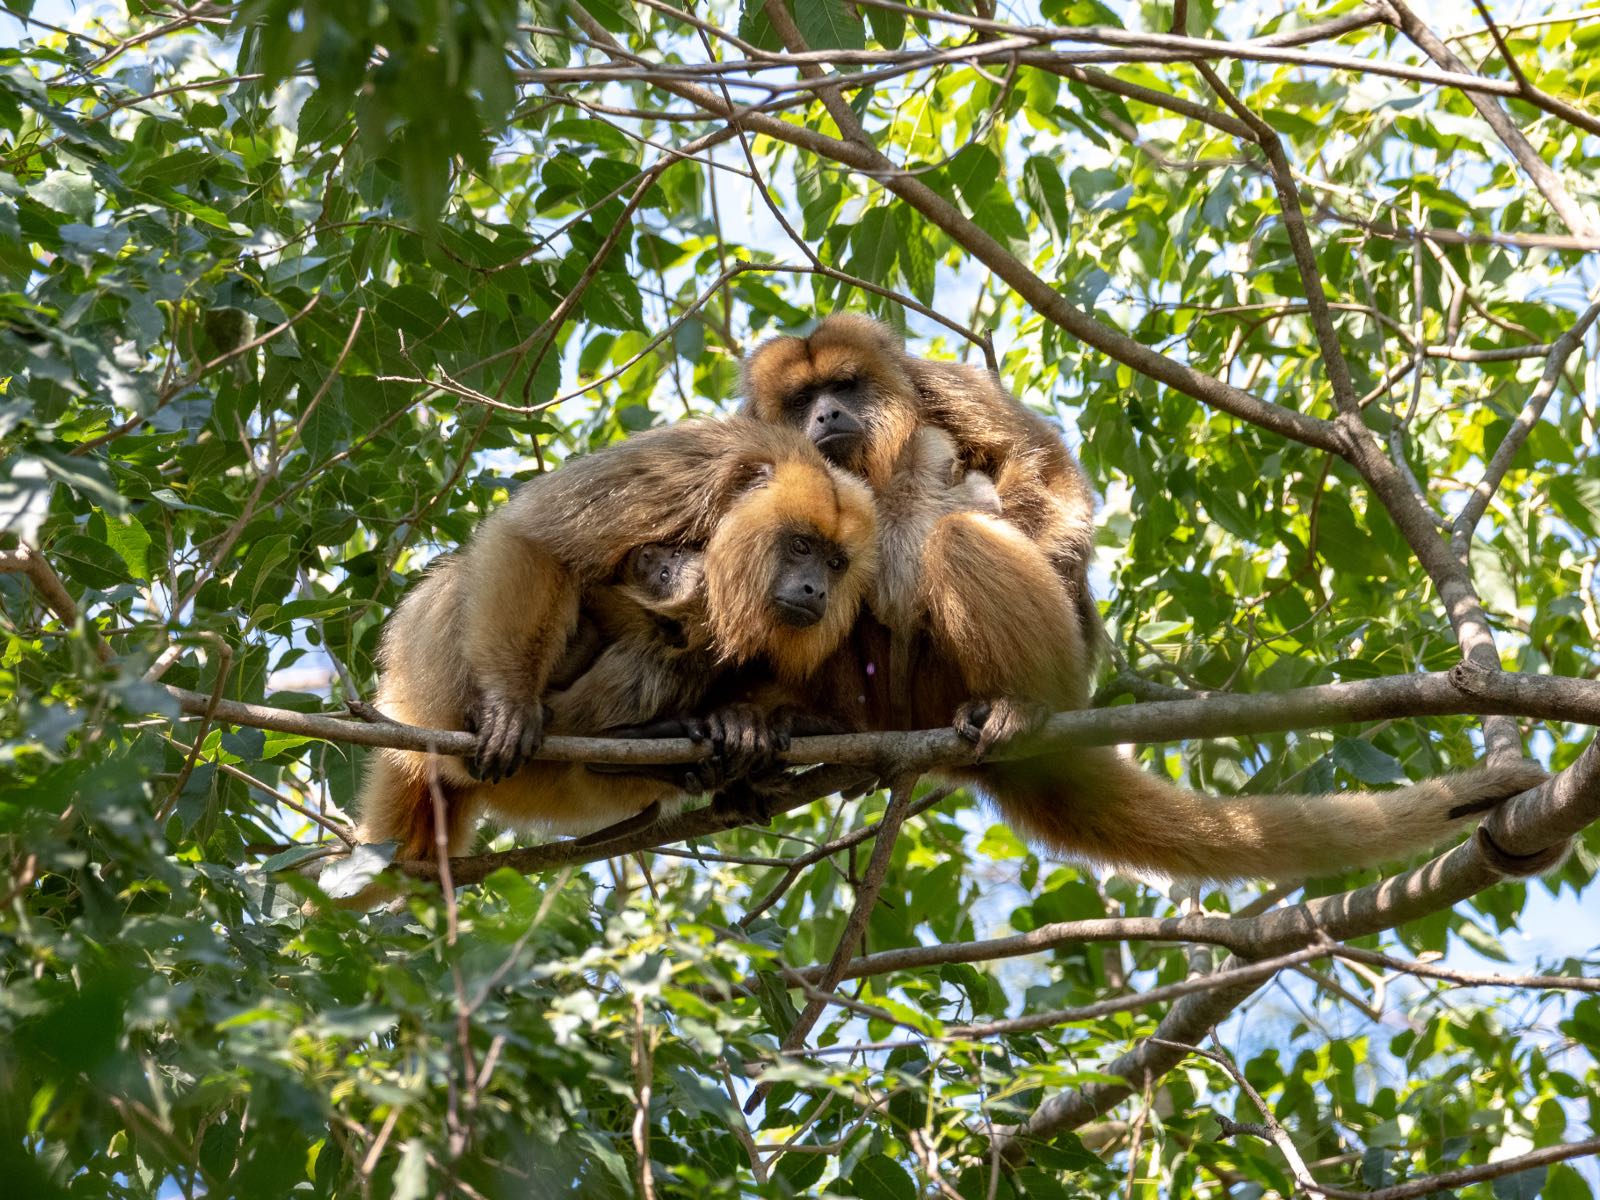 Group of monkeys huddling on a branch